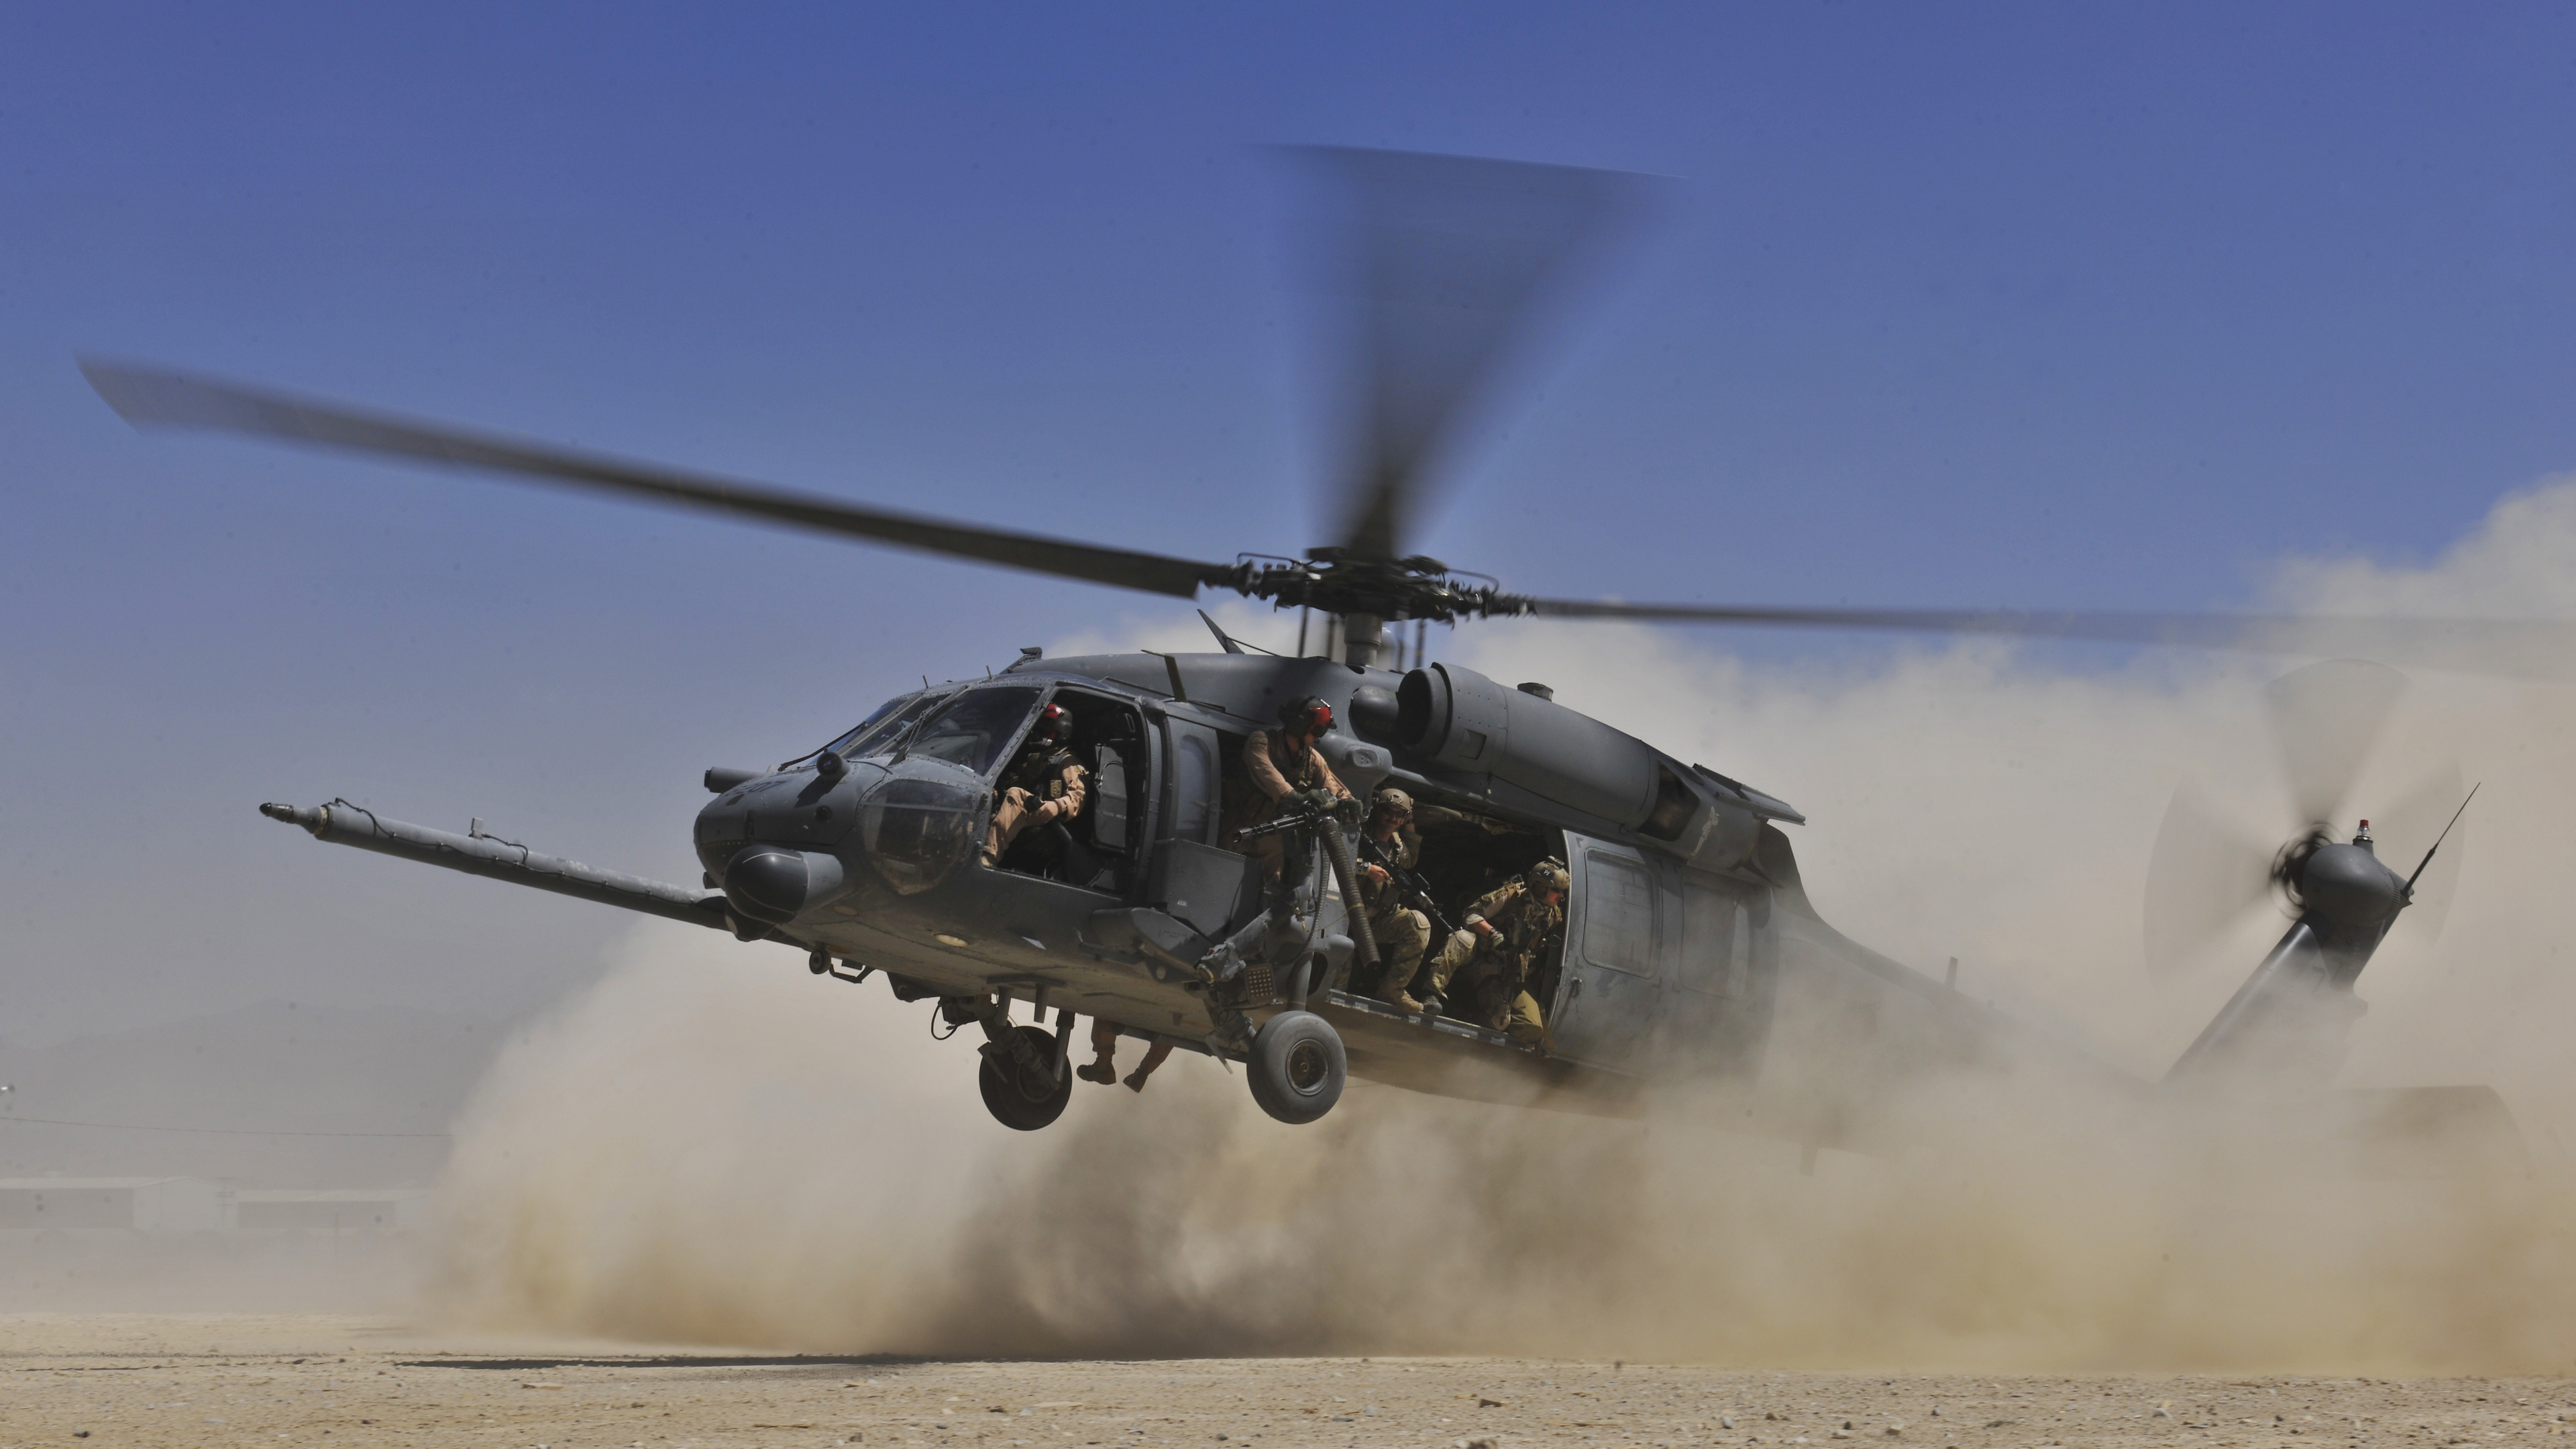 Helicóptero Negro en el Aire Durante el Día. Wallpaper in 3840x2160 Resolution